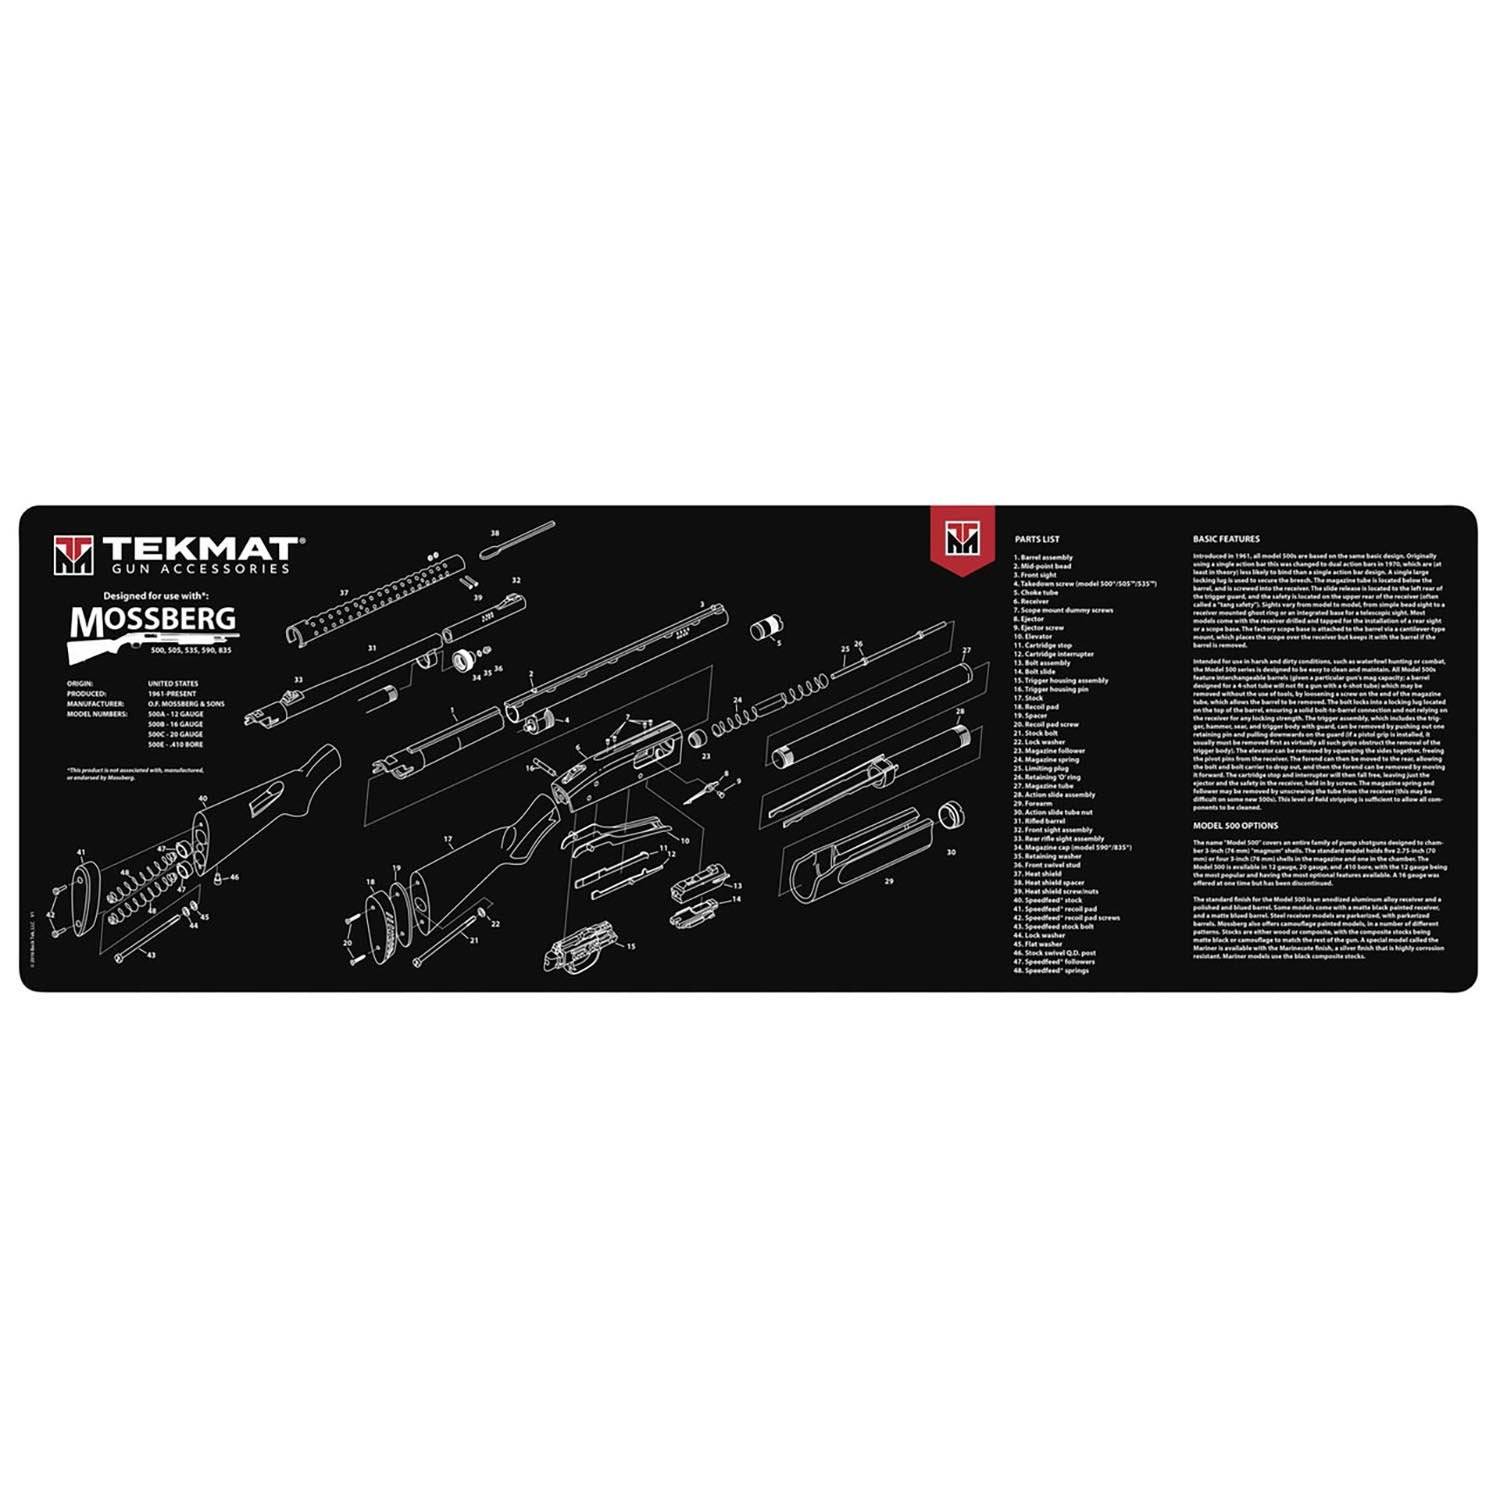 TekMat Mossberg Shotgun Gun Cleaning Mat 36"